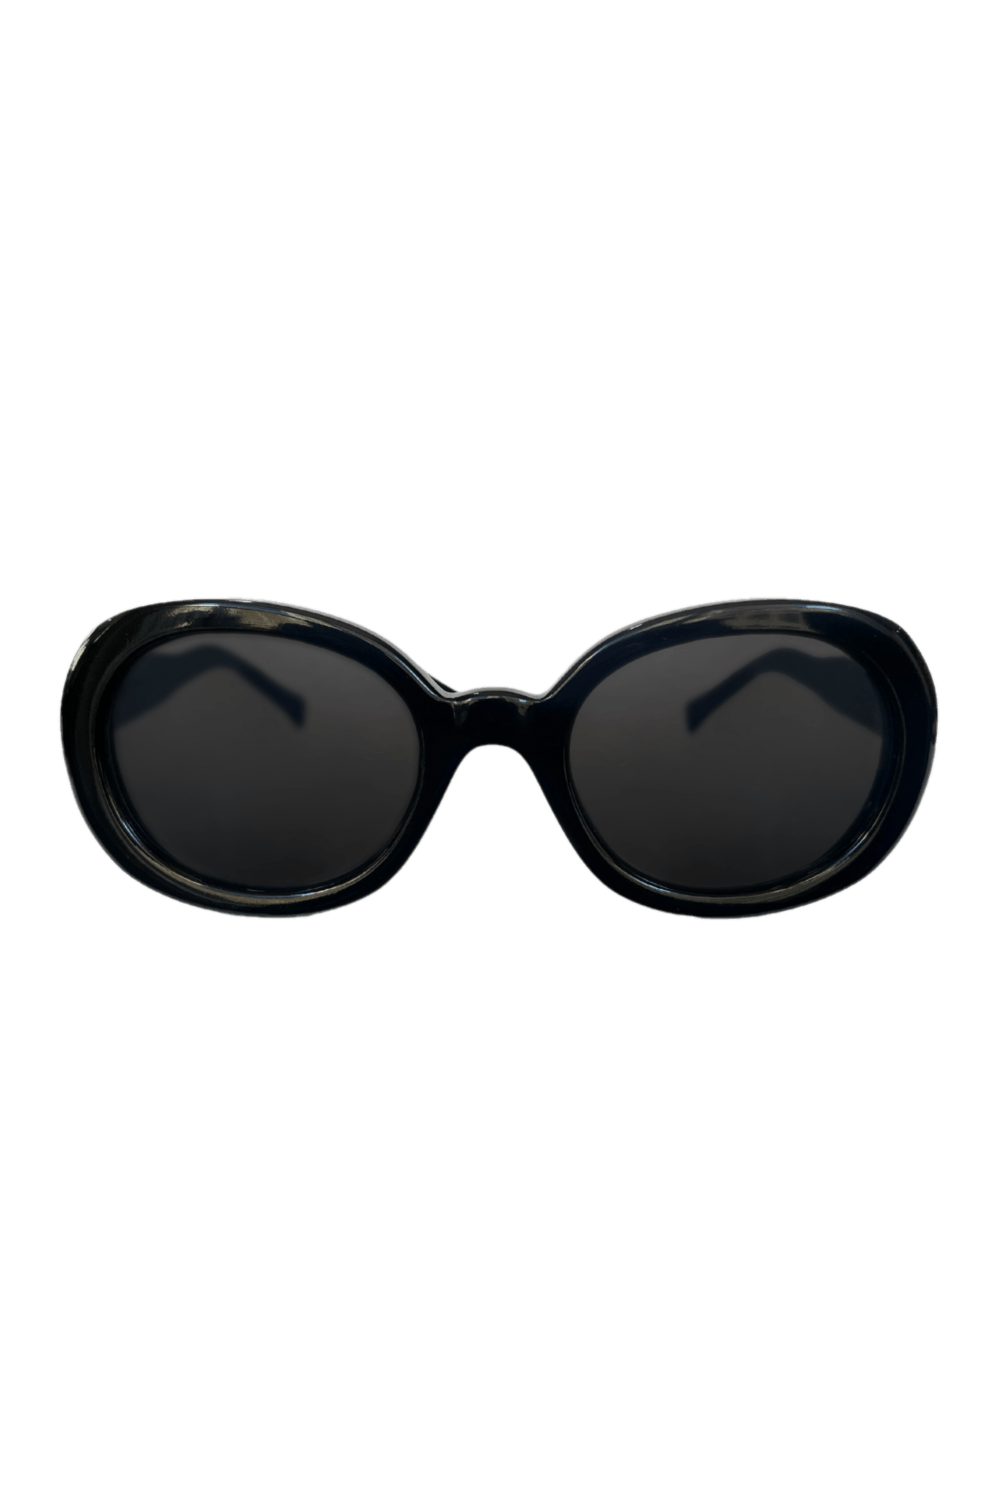 Óculos oval vintage preto